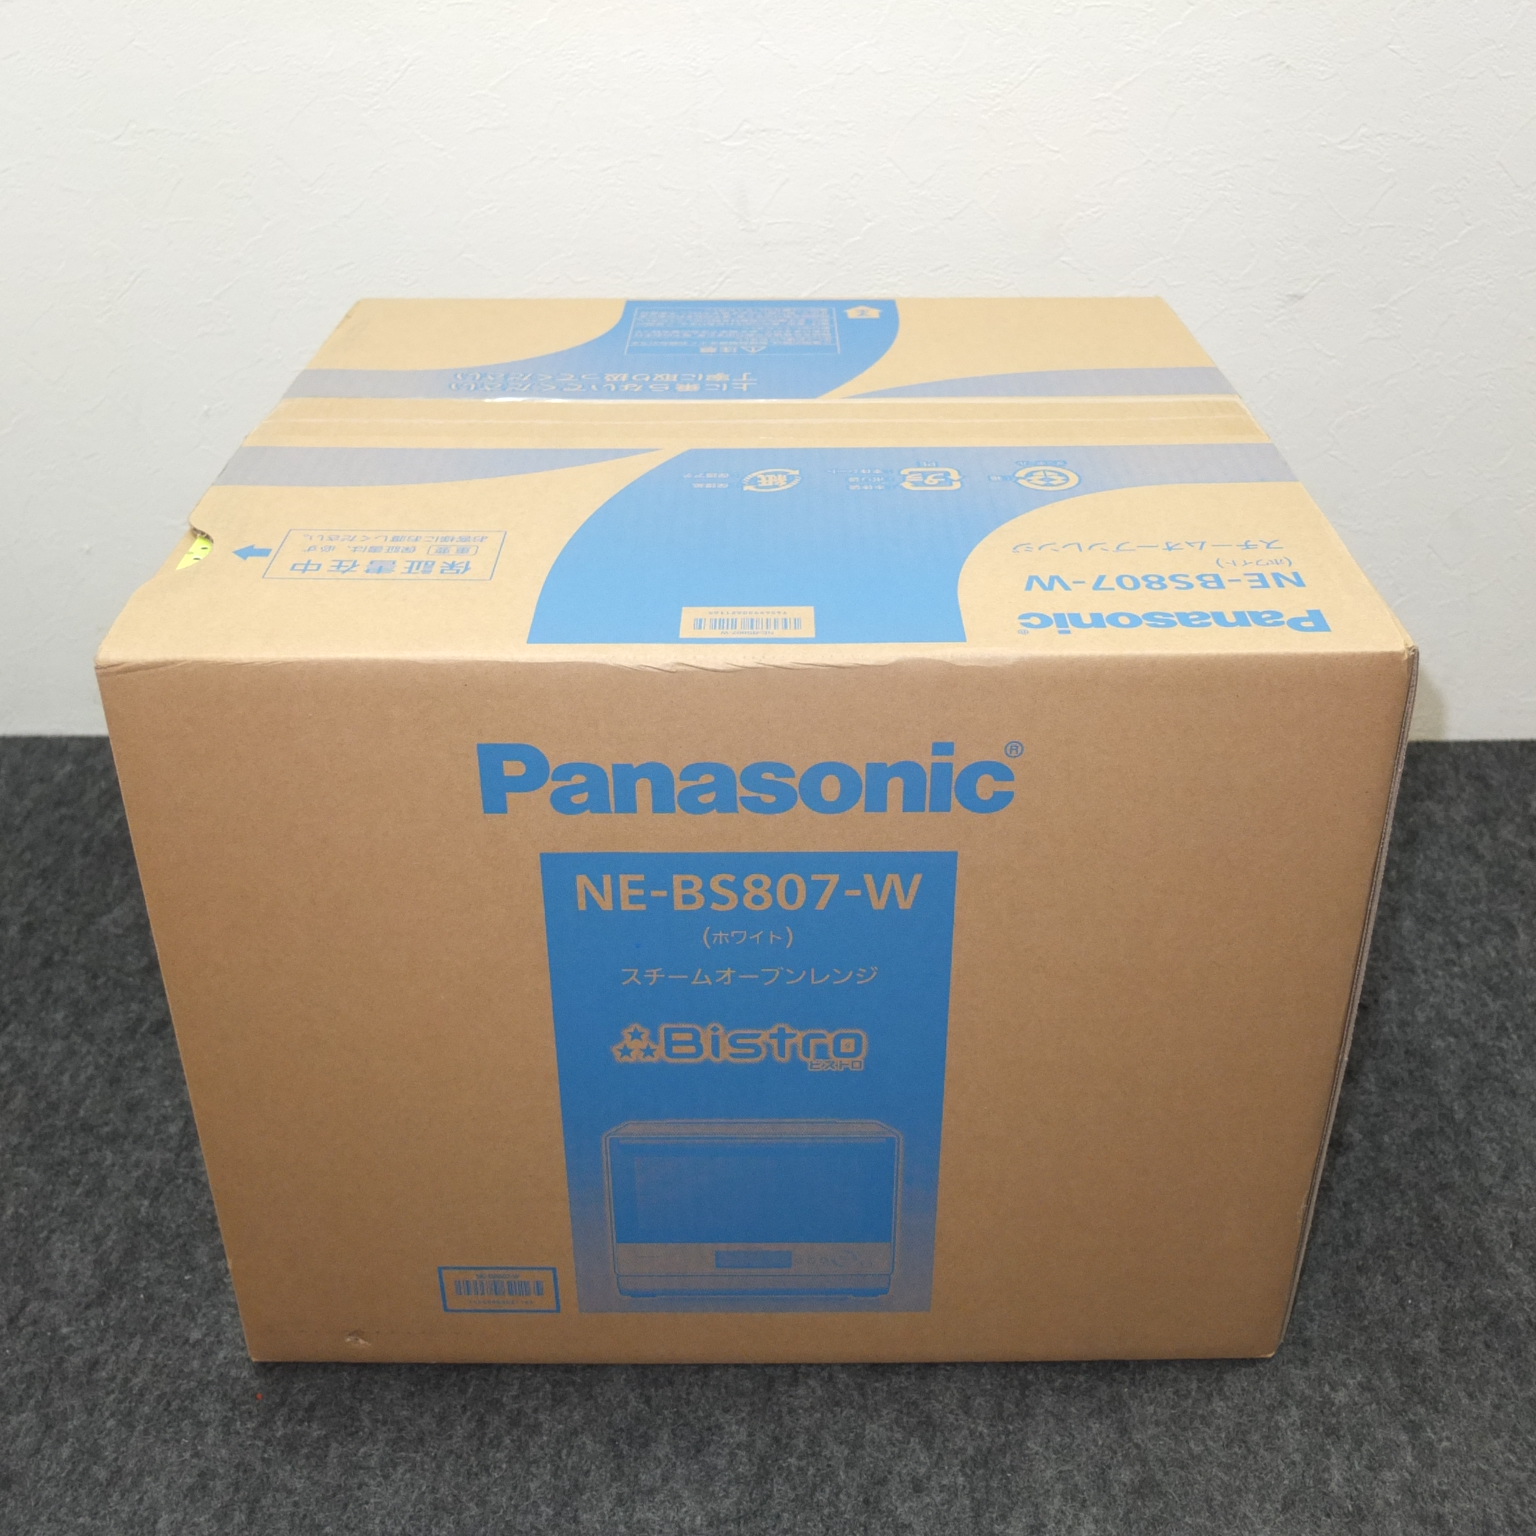 Panasonic スチームオーブンレンジ ビストロ 3つ星 NE-BS807-W